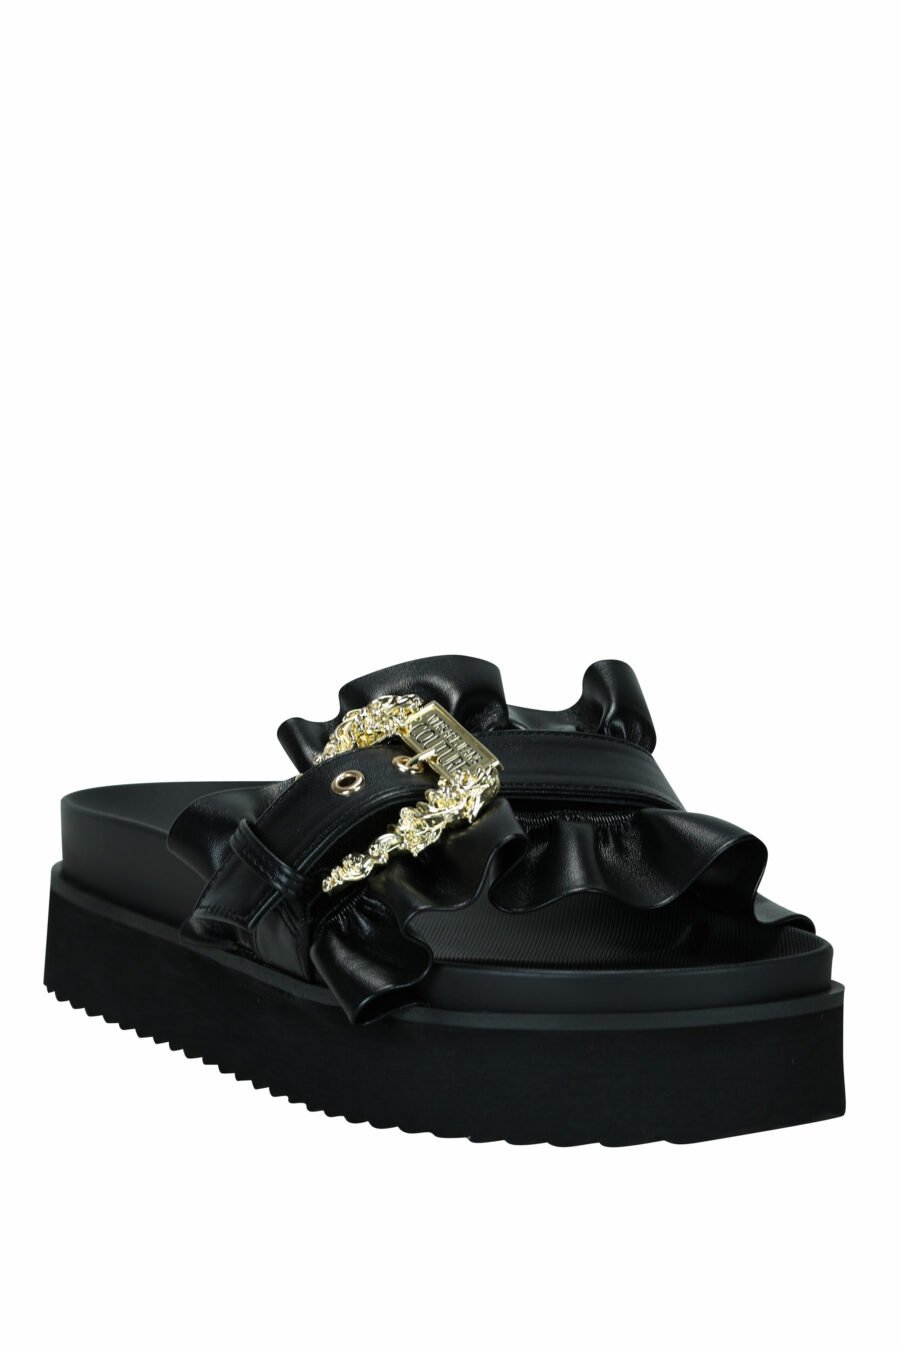 Sandales noires à plateforme avec boucle baroque dorée - 8052019607192 3